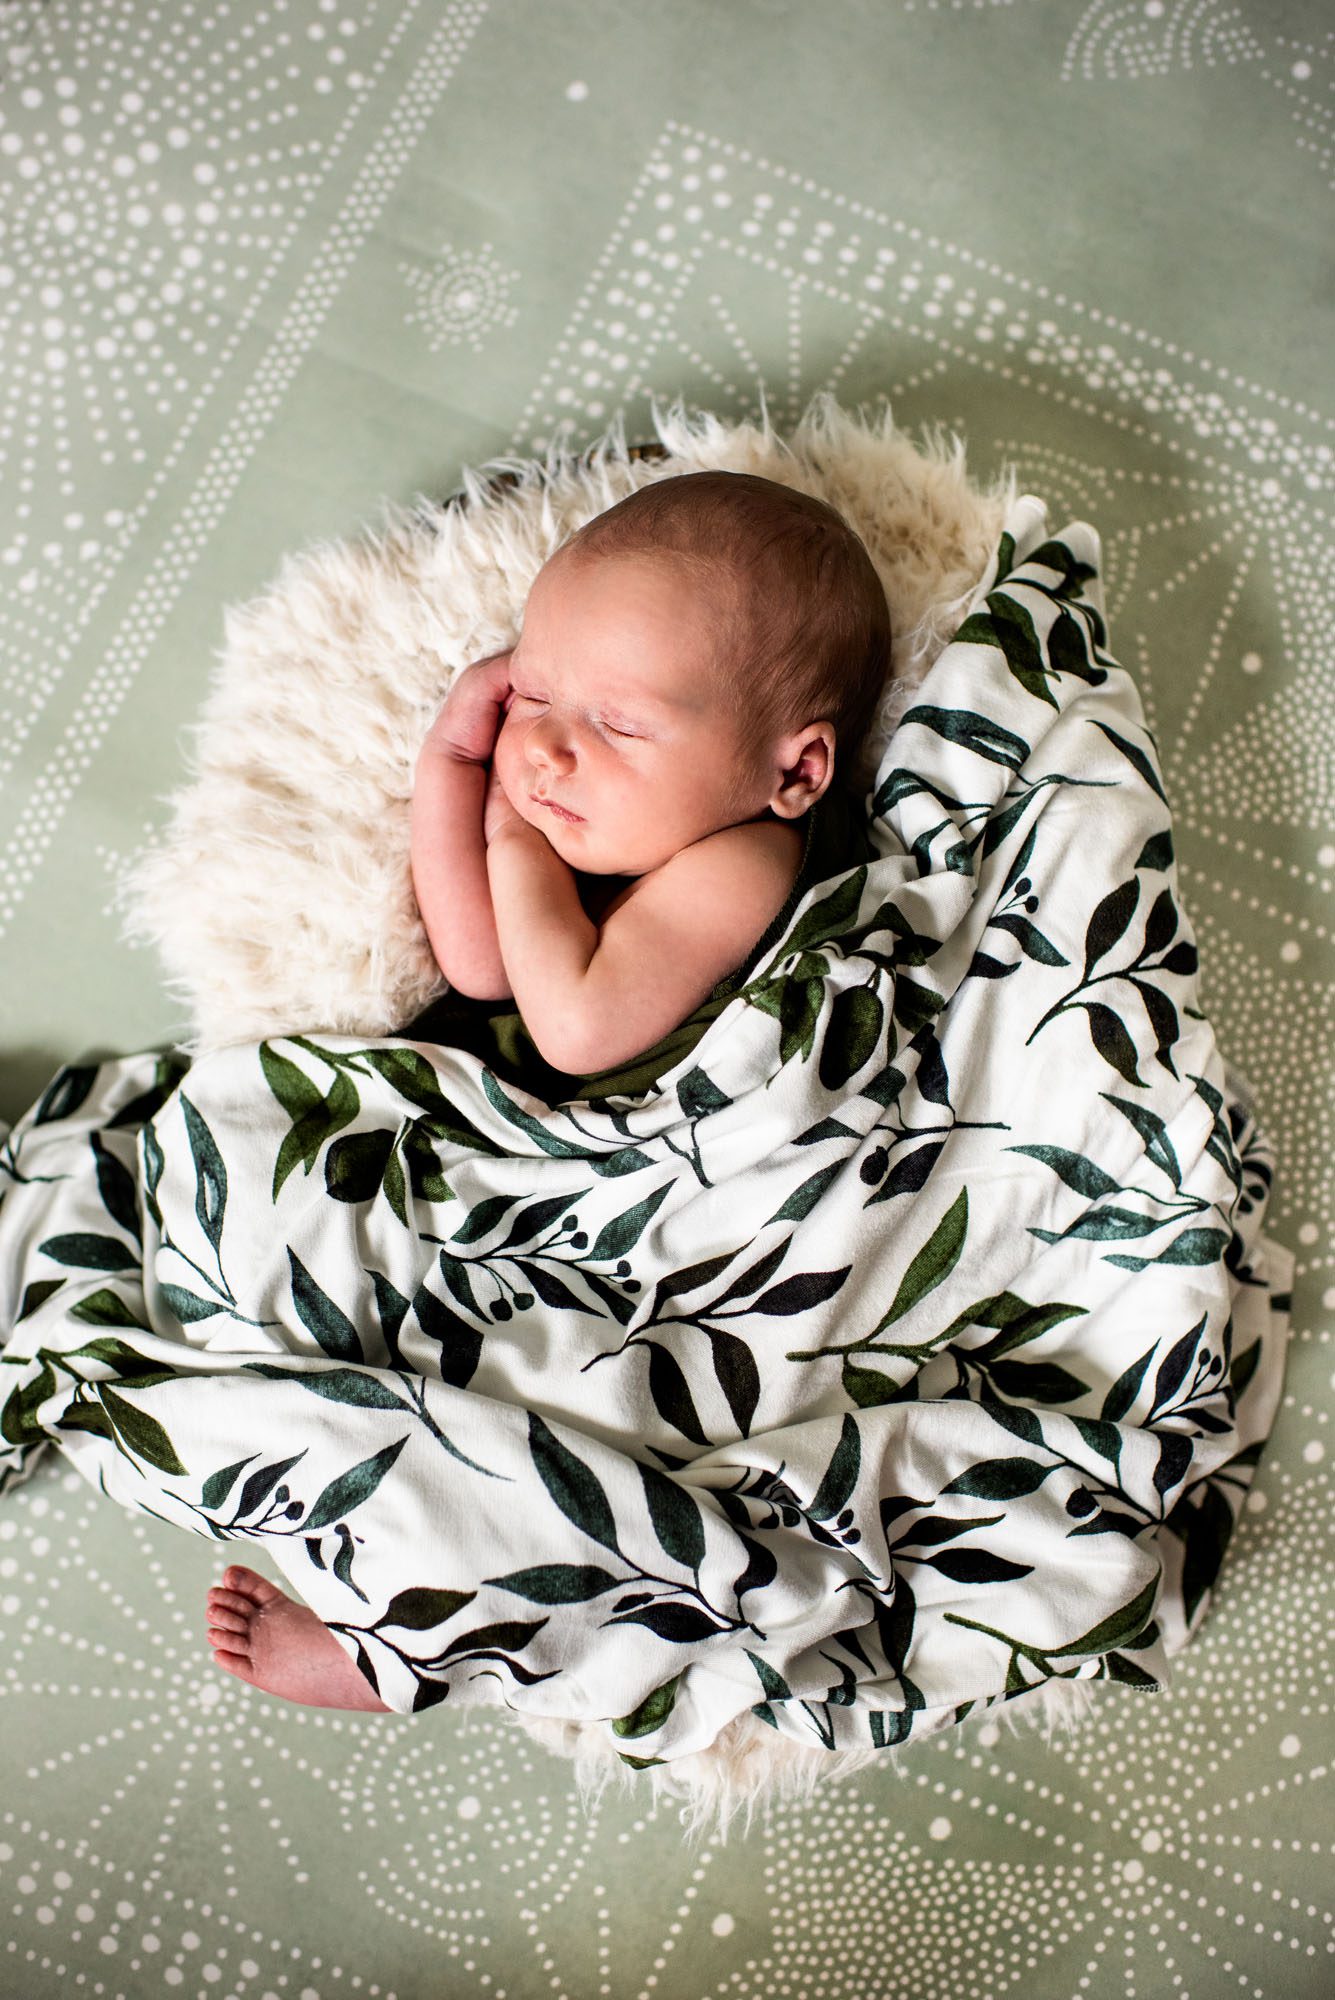 San Antonio Newborn Photographer, Baby asleep in basket